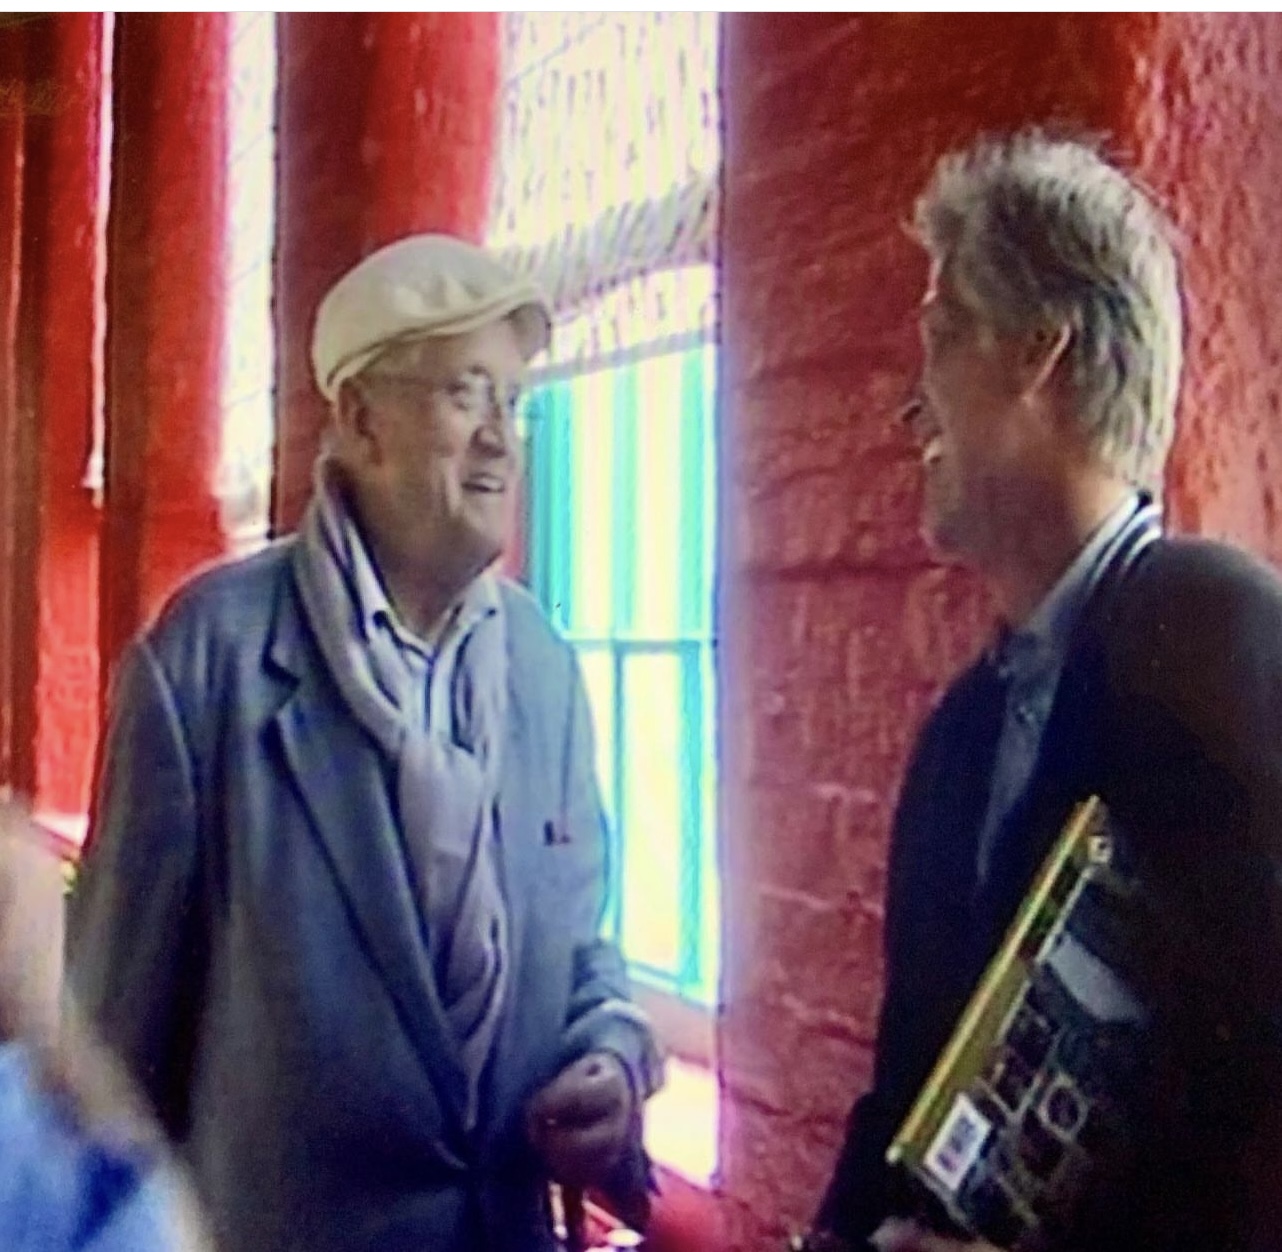 David Hockney, still from Documentary by Alan Hydes